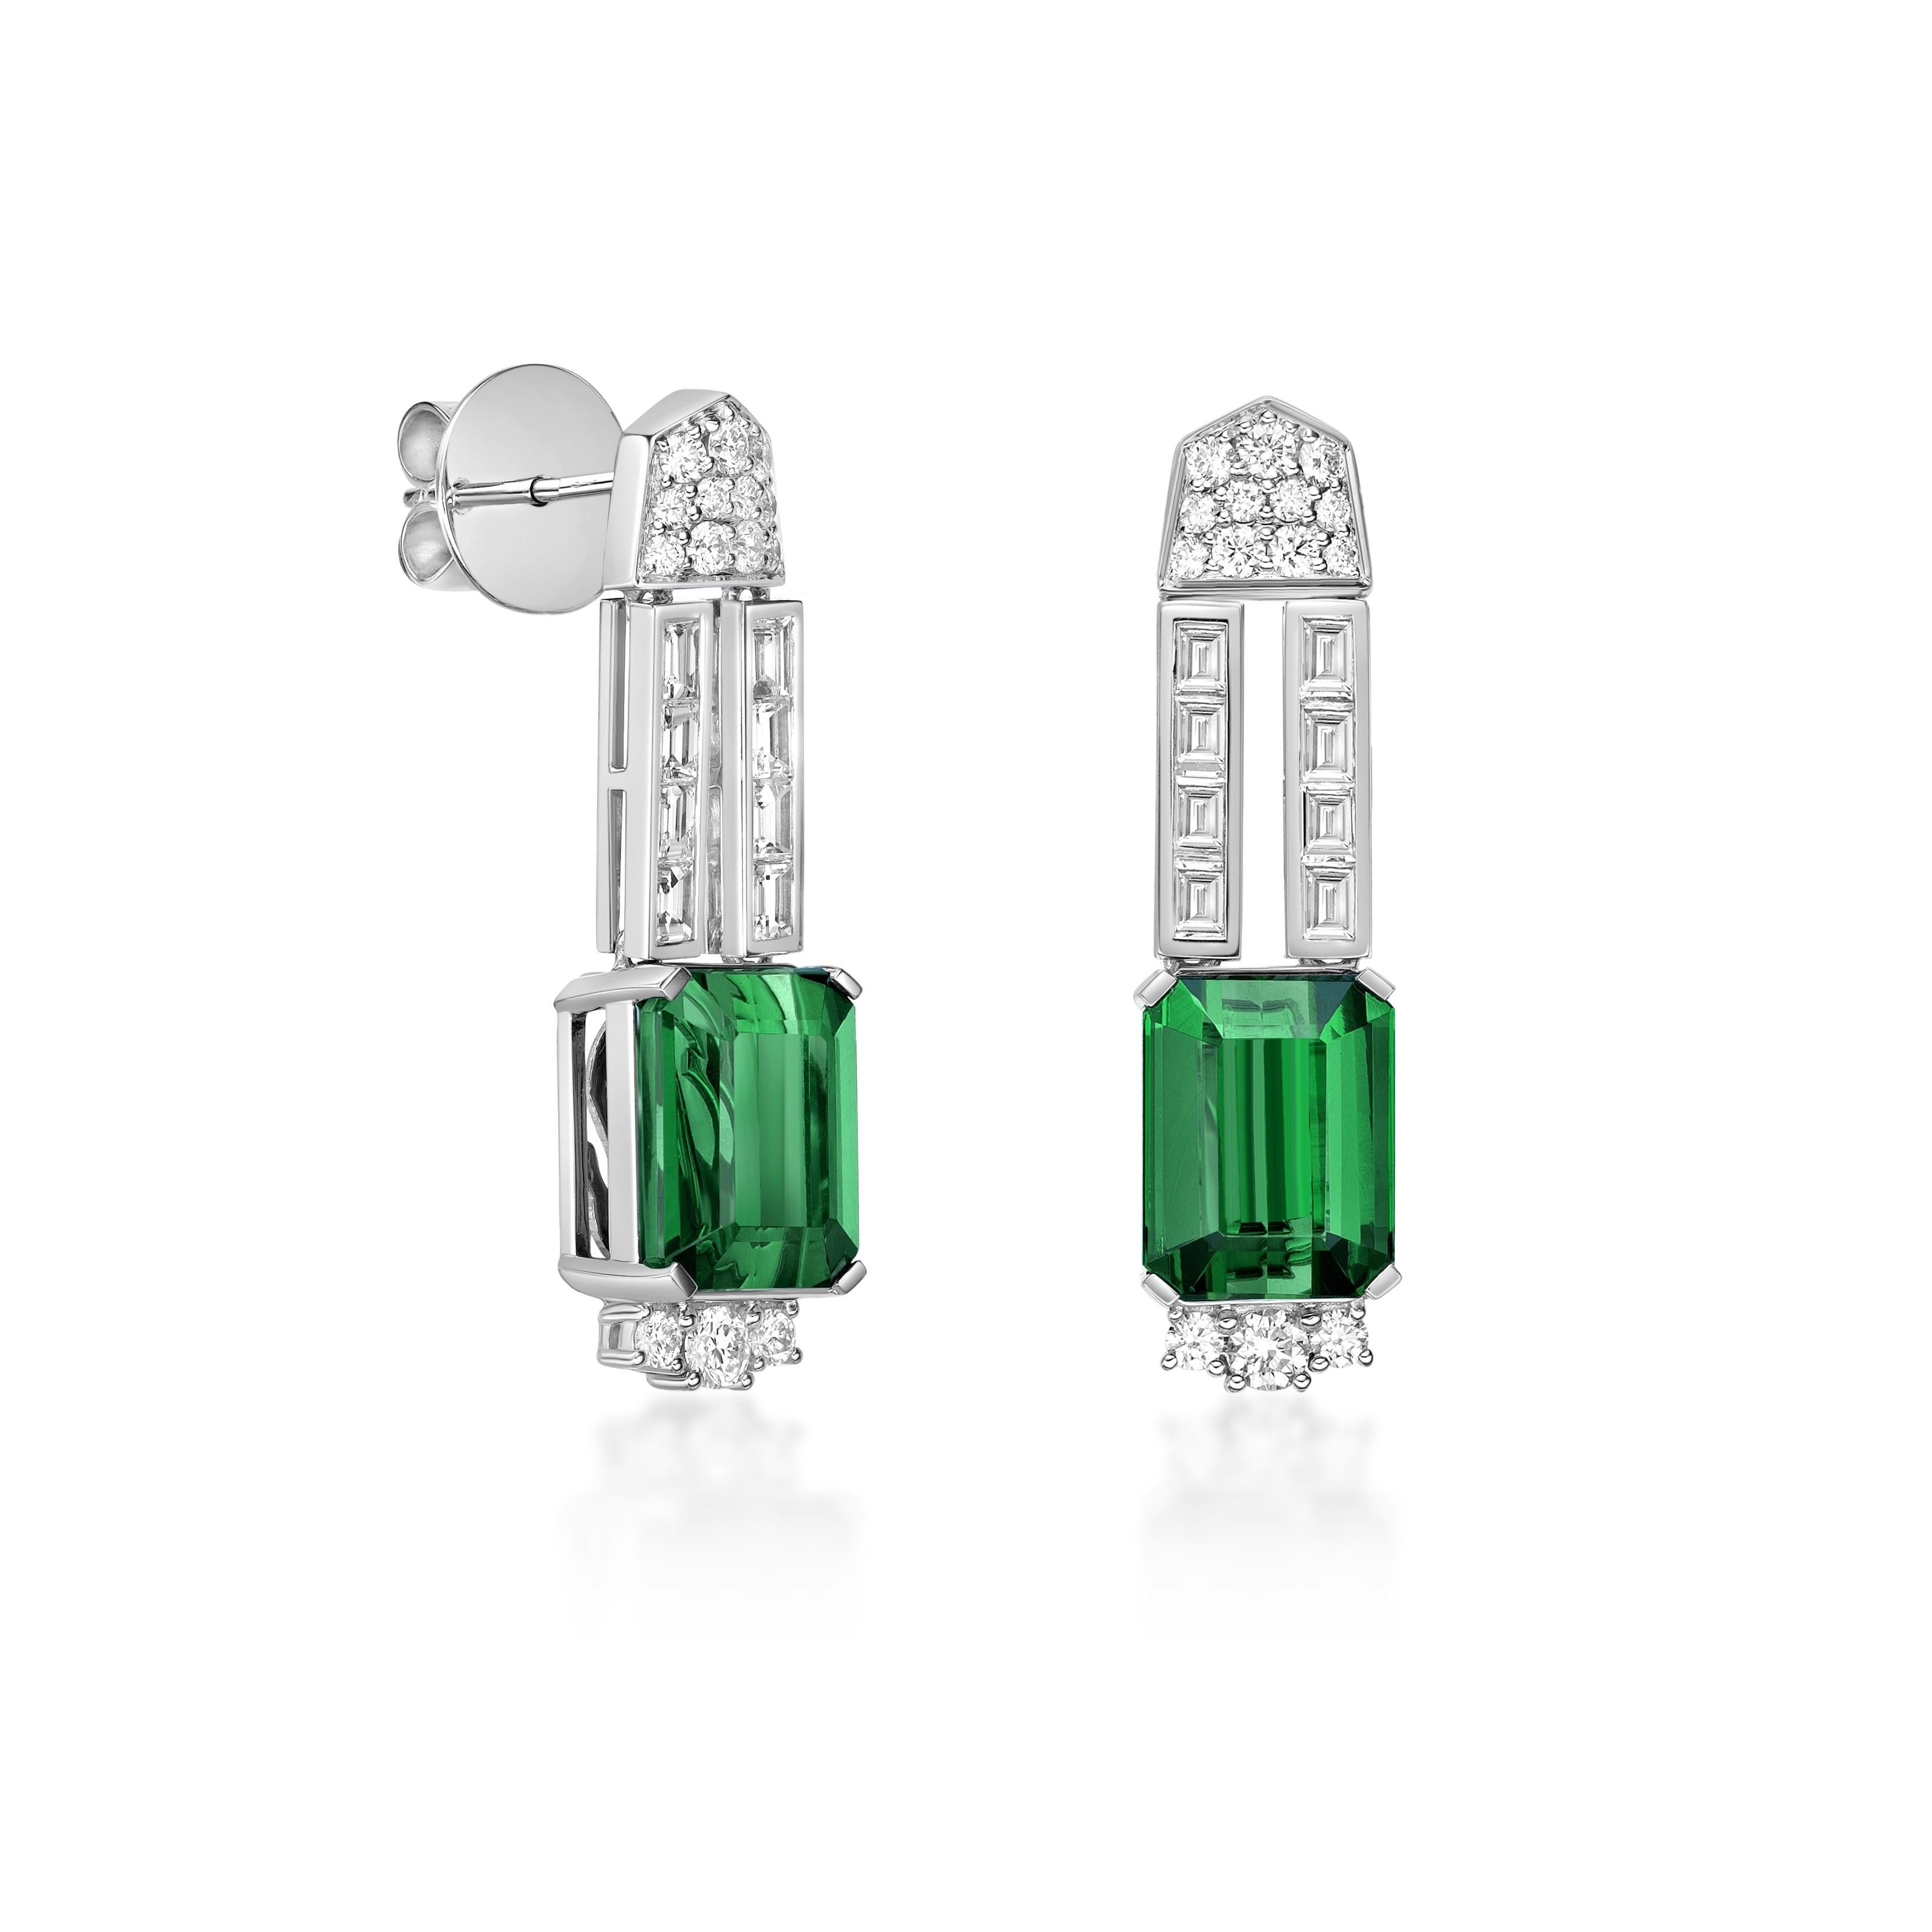 Diese Kollektion bietet eine Reihe von grünen Turmalinen mit einem grünen Farbton, der so cool ist, wie er nur sein kann! Die mit Diamanten besetzten Ohrringe sind aus Weißgold gefertigt und wirken klassisch und elegant.

Grüne